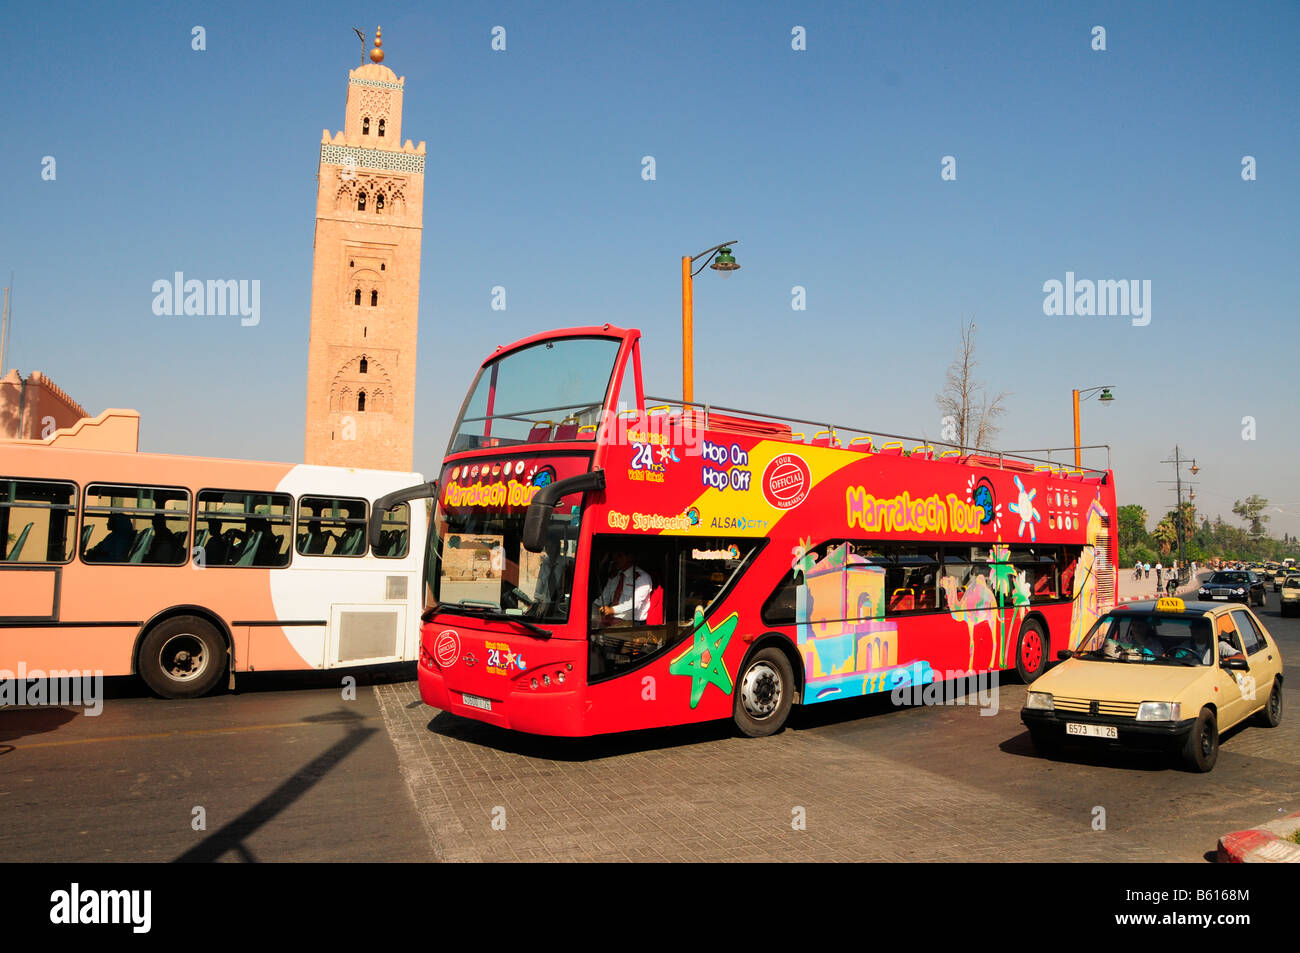 voyage france maroc bus